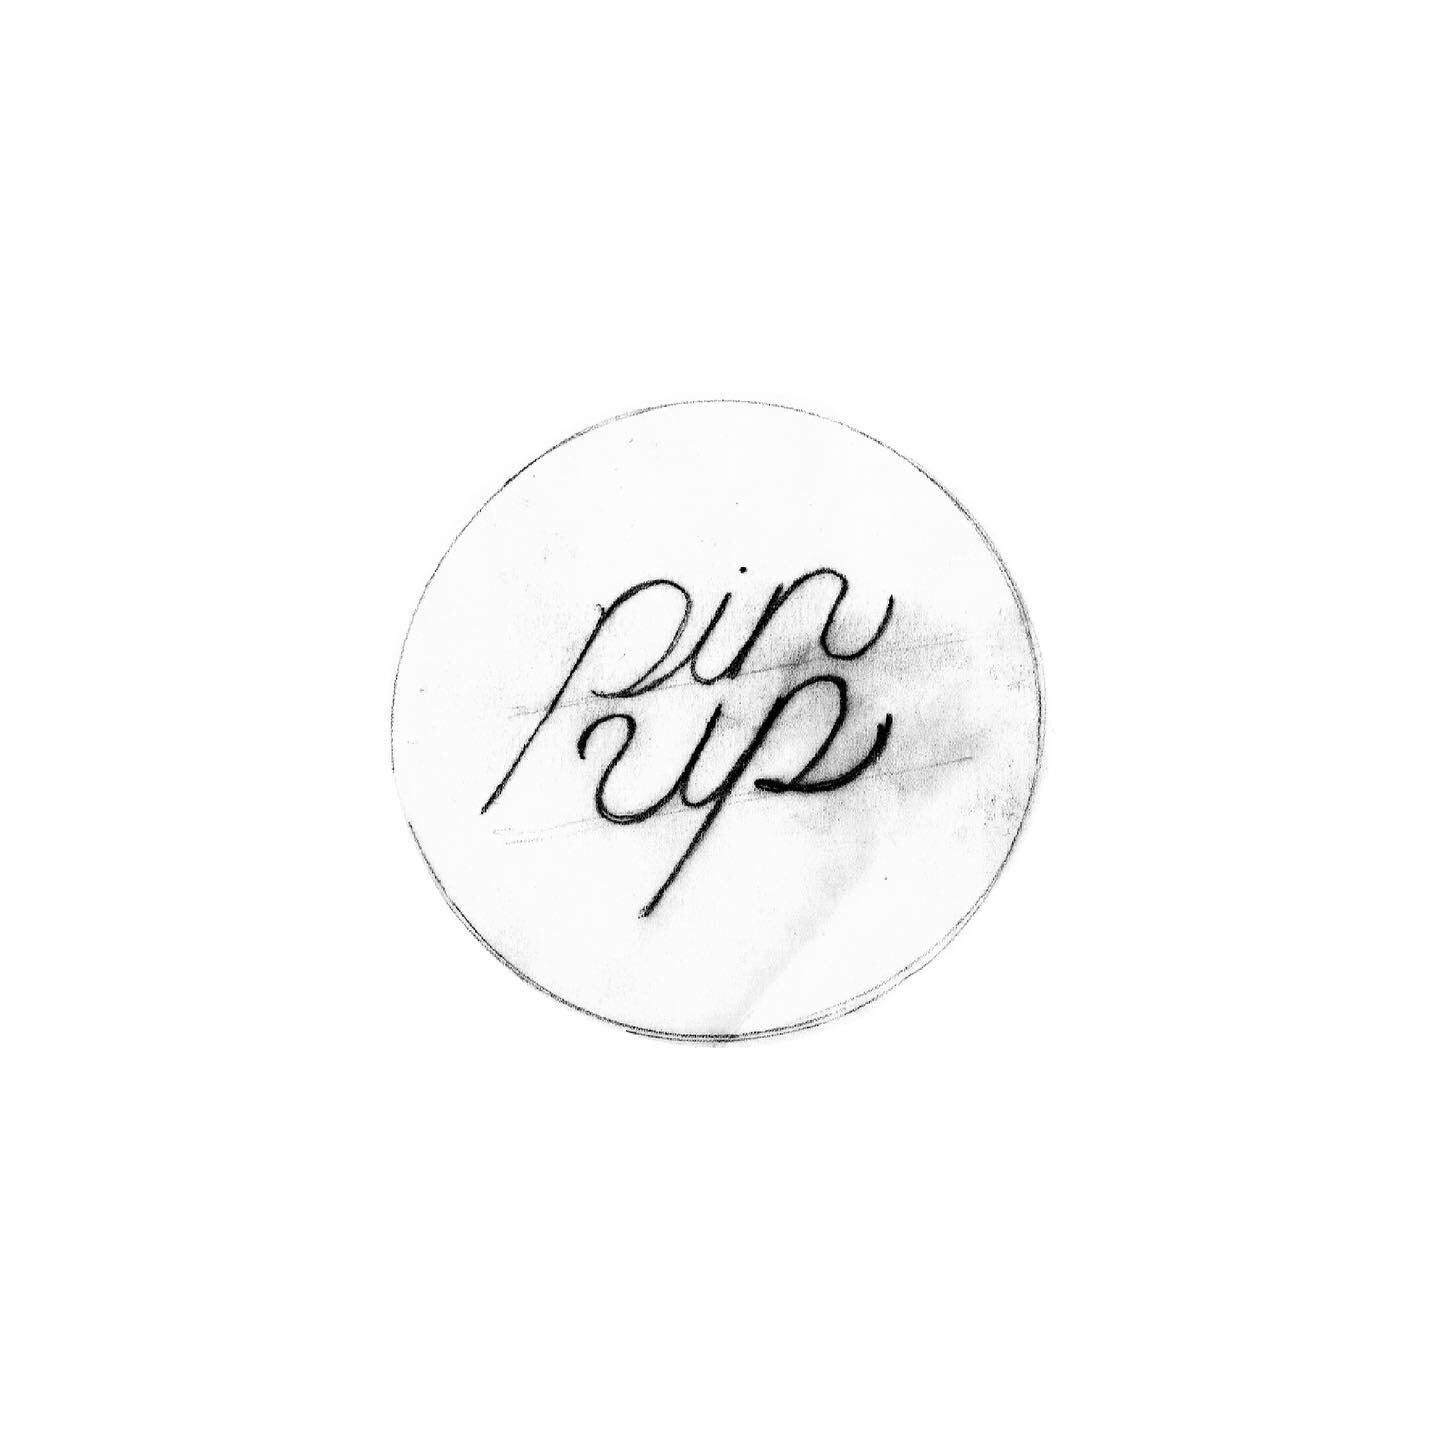 Lo nuevo de @pin_up_tap_room 🍺 pr&oacute;ximamente con tu chela artesanal favorita.
.
#logofolio #typography #cervezaartesanal #designspiration